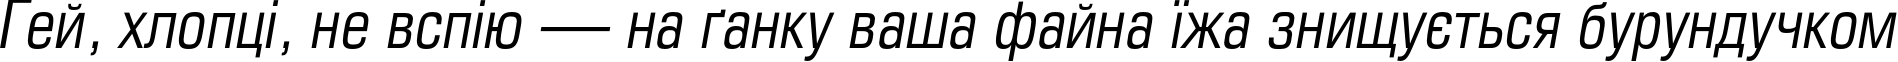 Пример написания шрифтом EuropeCond Italic текста на украинском